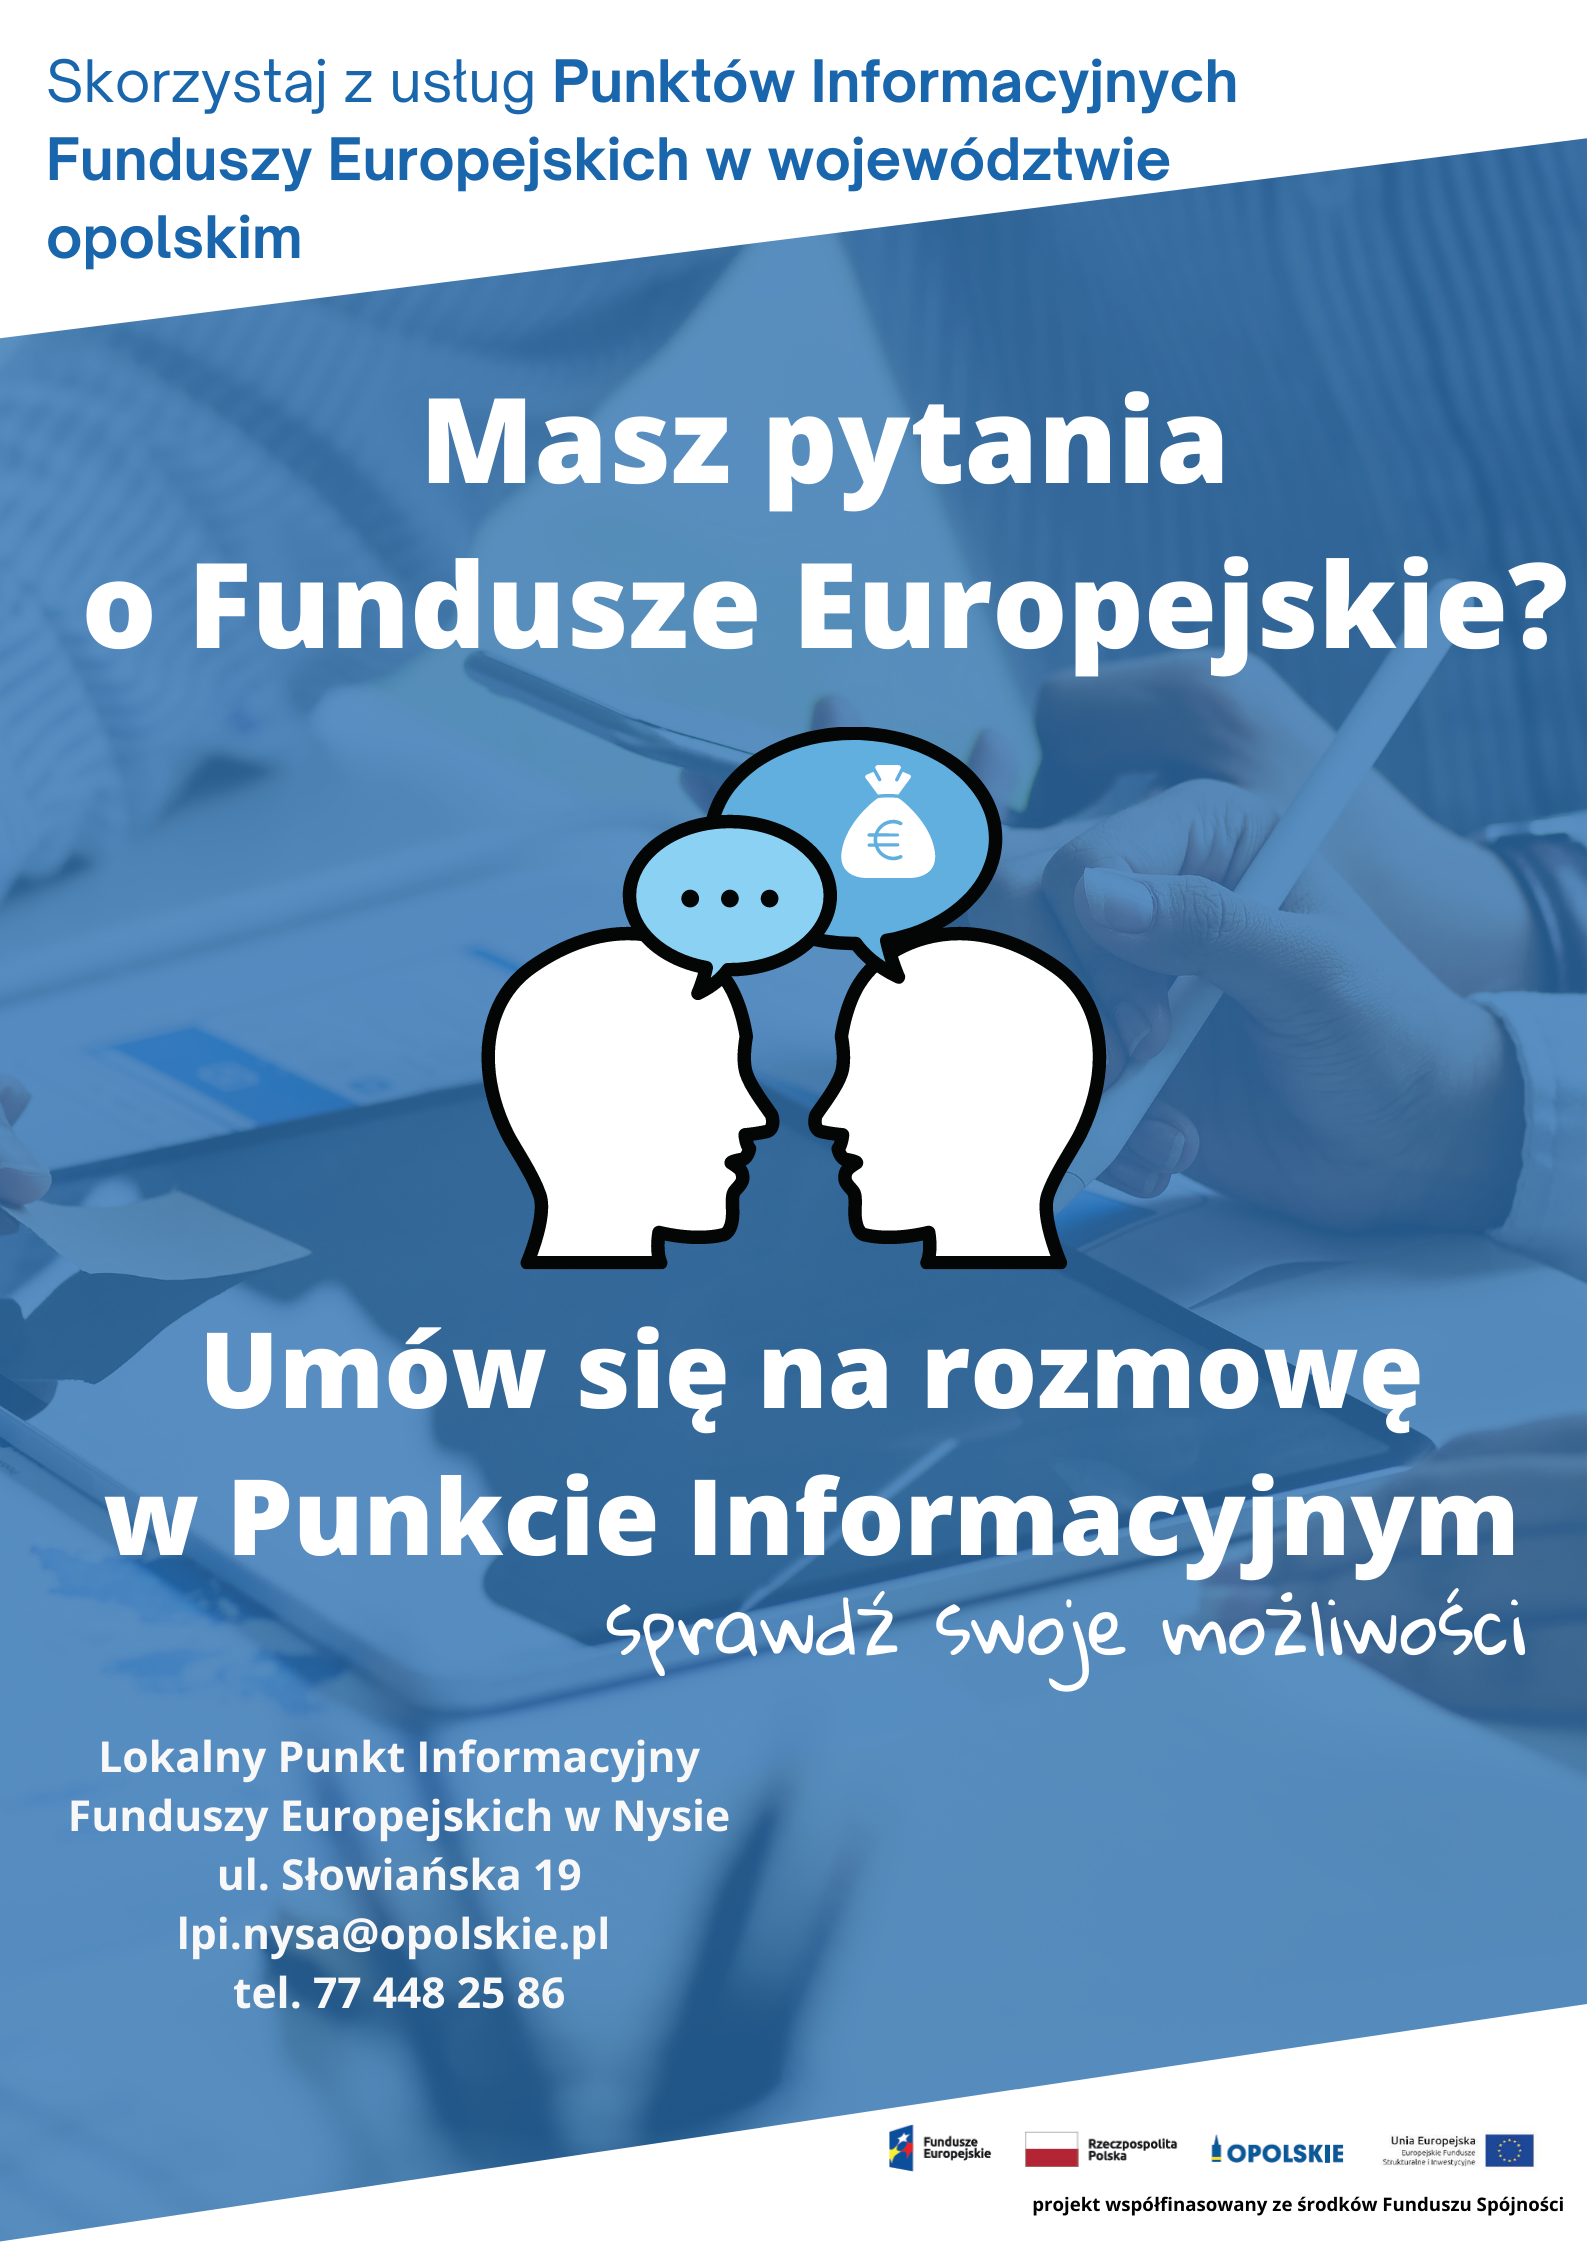 Skorzystaj z usług Punktów Informacyjnych Funduszy Europejskich w województwie opolskim